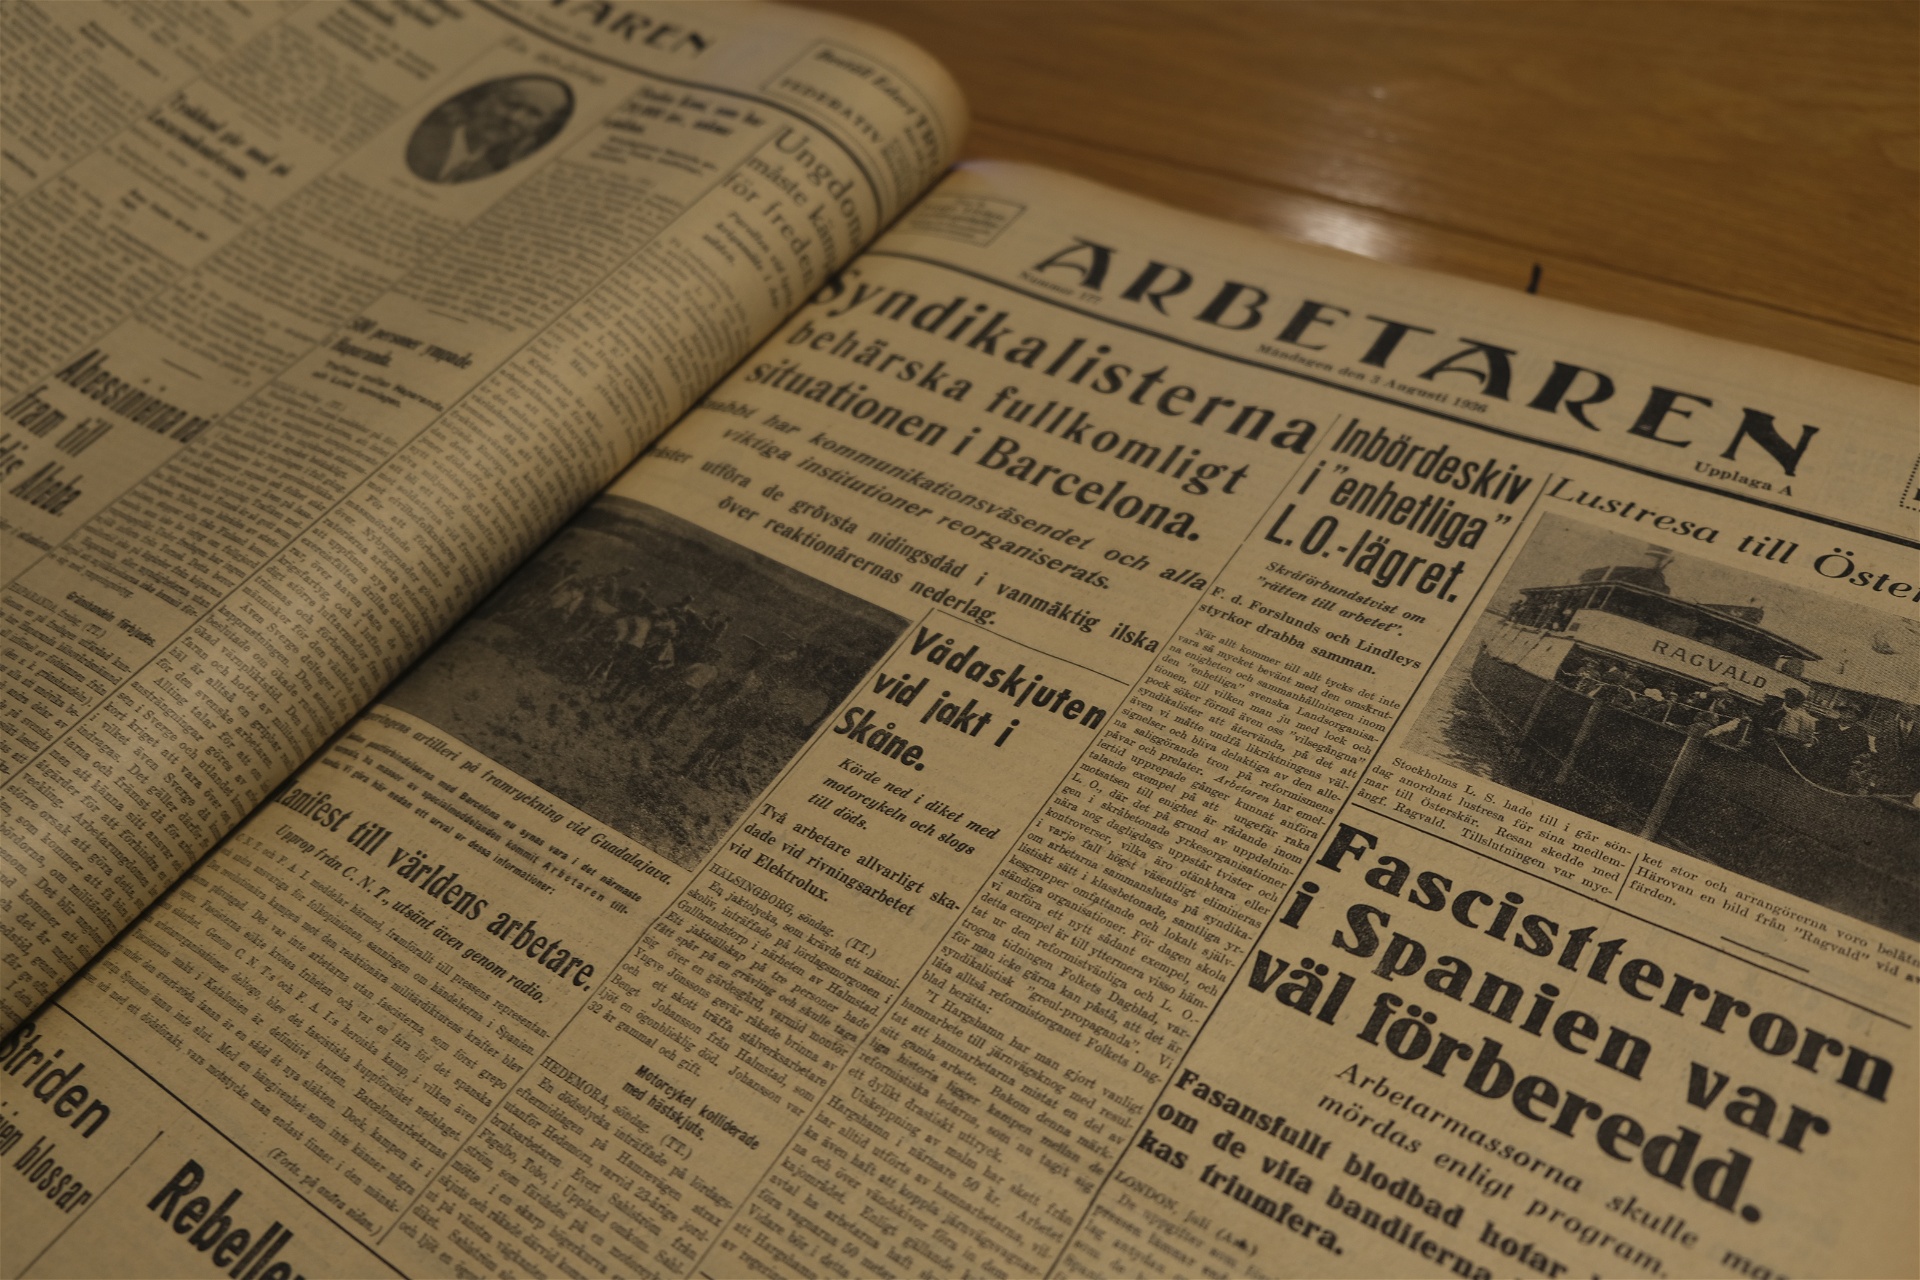 Tidningen Arbetarens förstasida den 3 augusti 1936. Foto: Johan Apel Röstlund